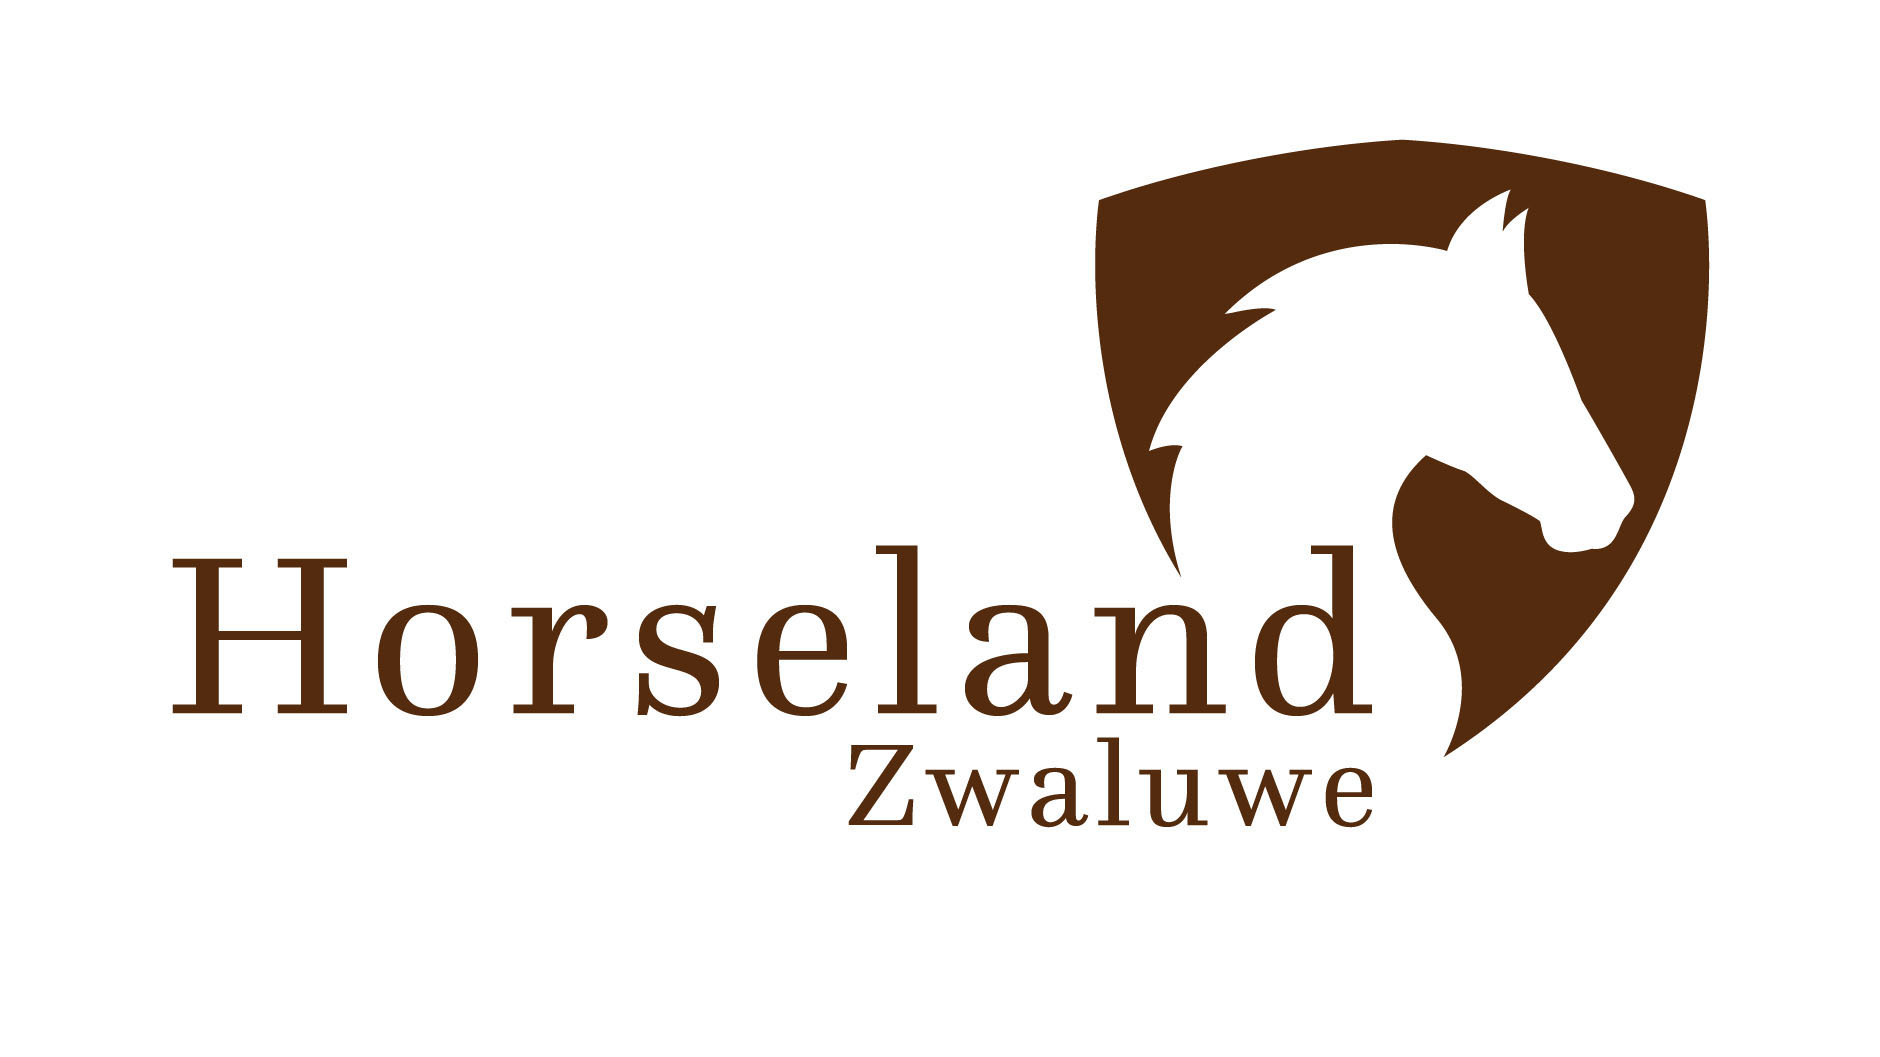 Horseland Zwaluw logo